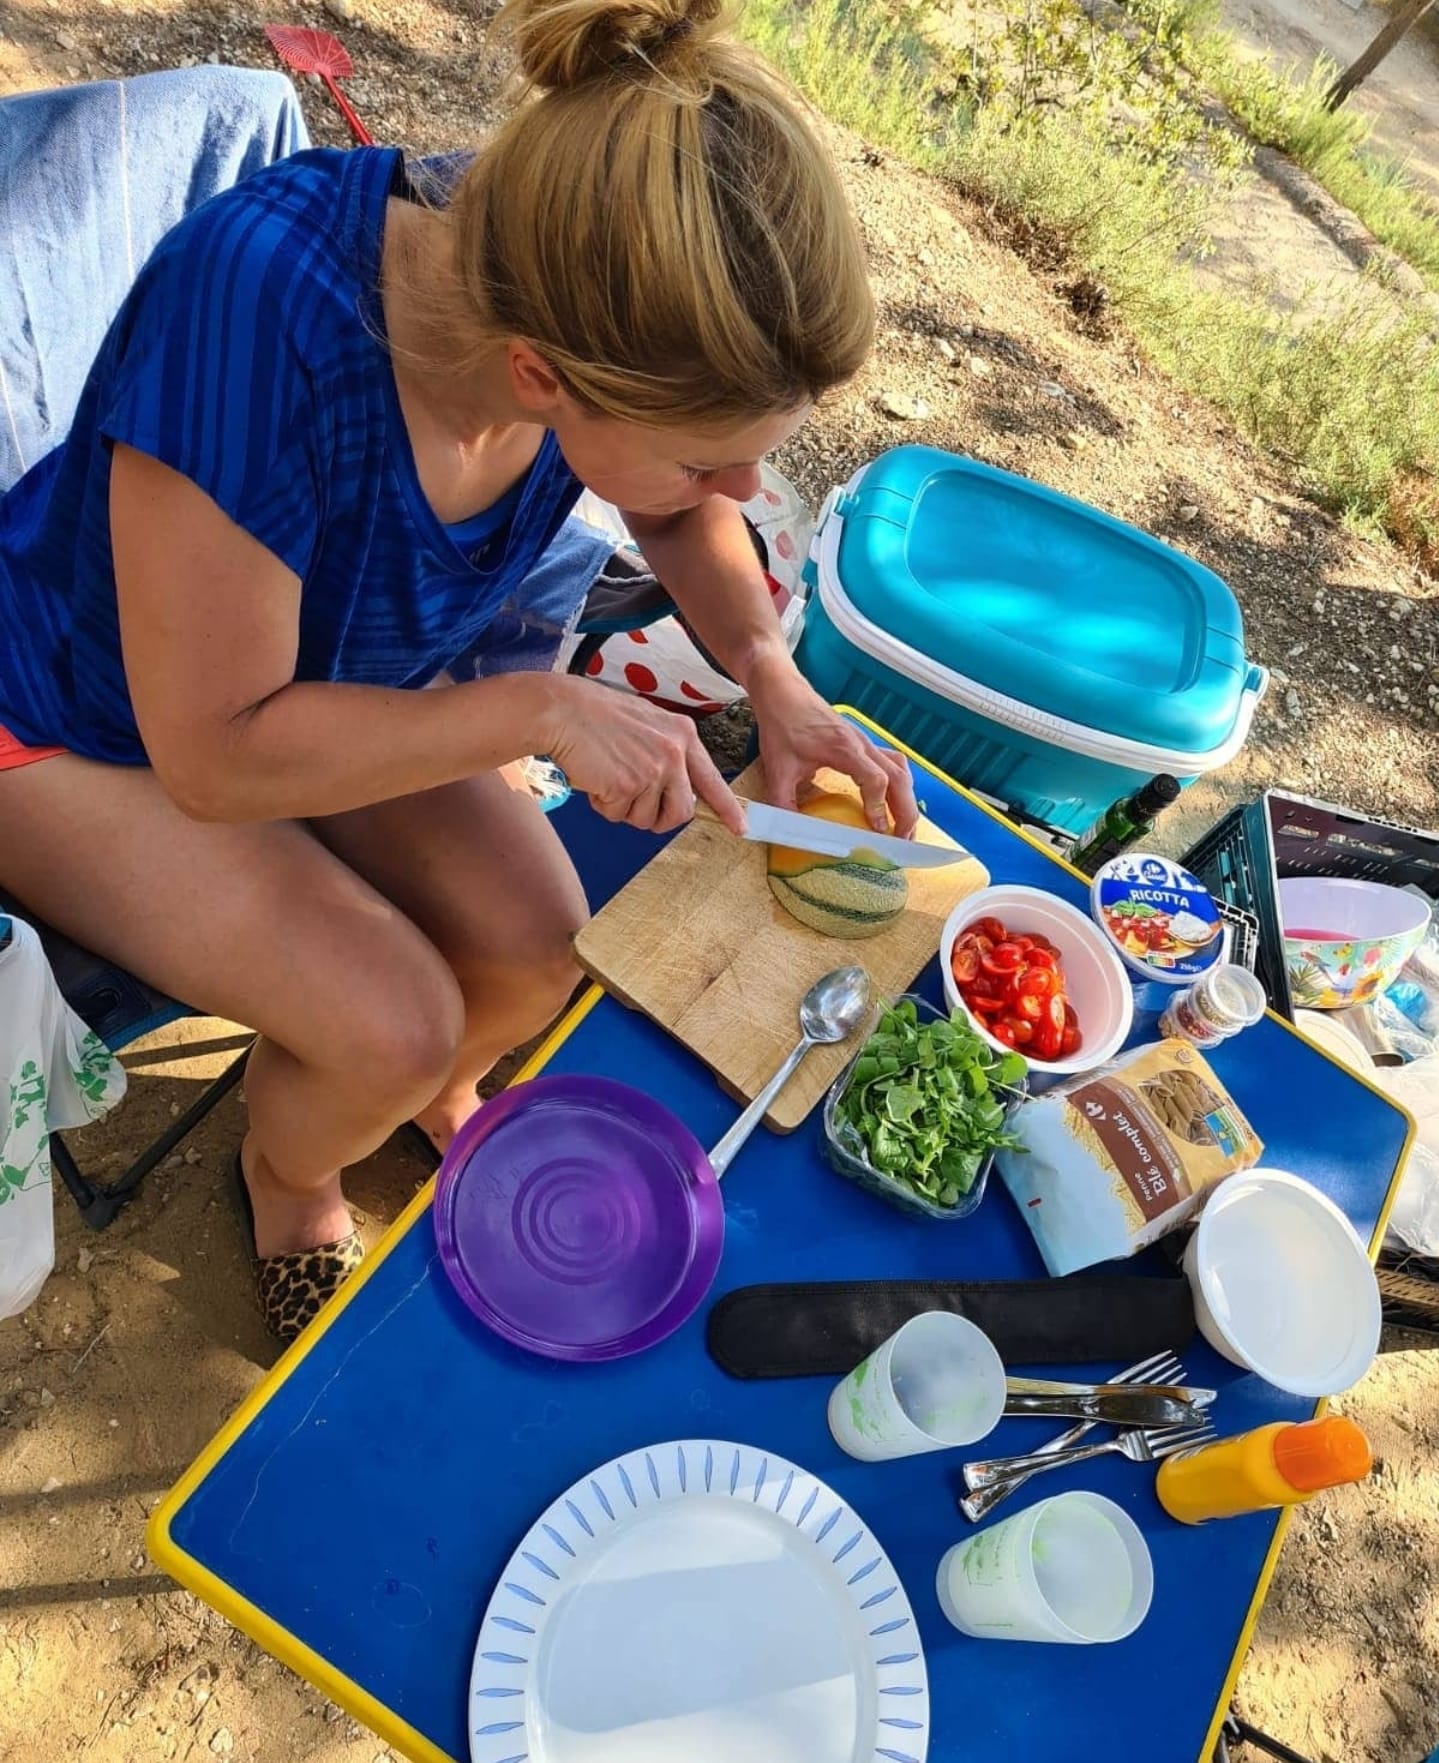 camping pasta koken pastasalade picknicken